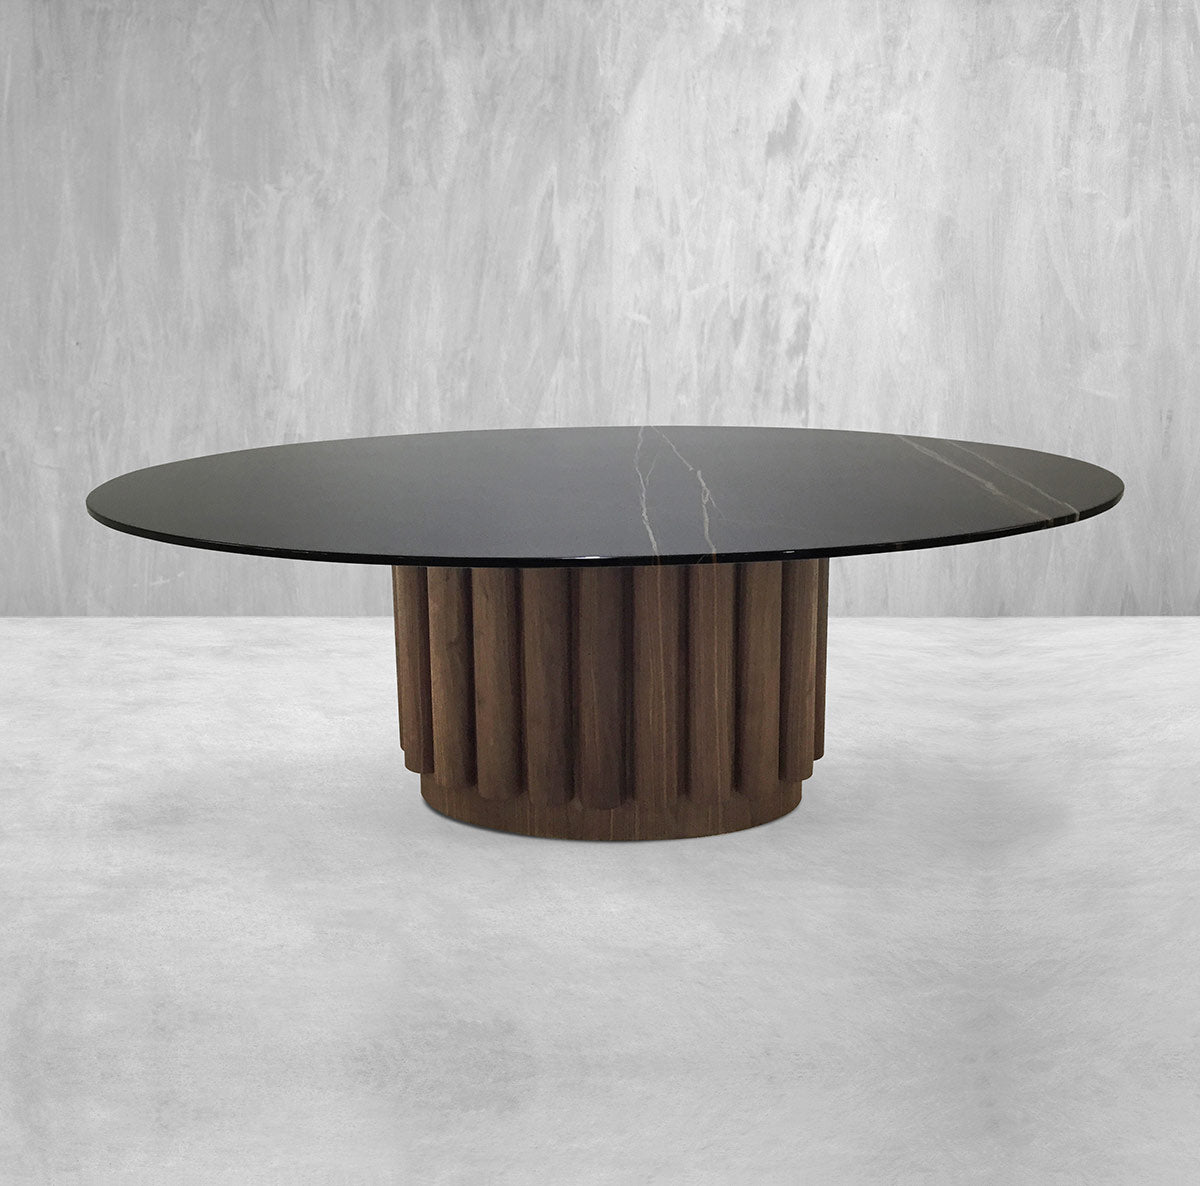 Eden Rock 2 Oval Dining Table in Walnut